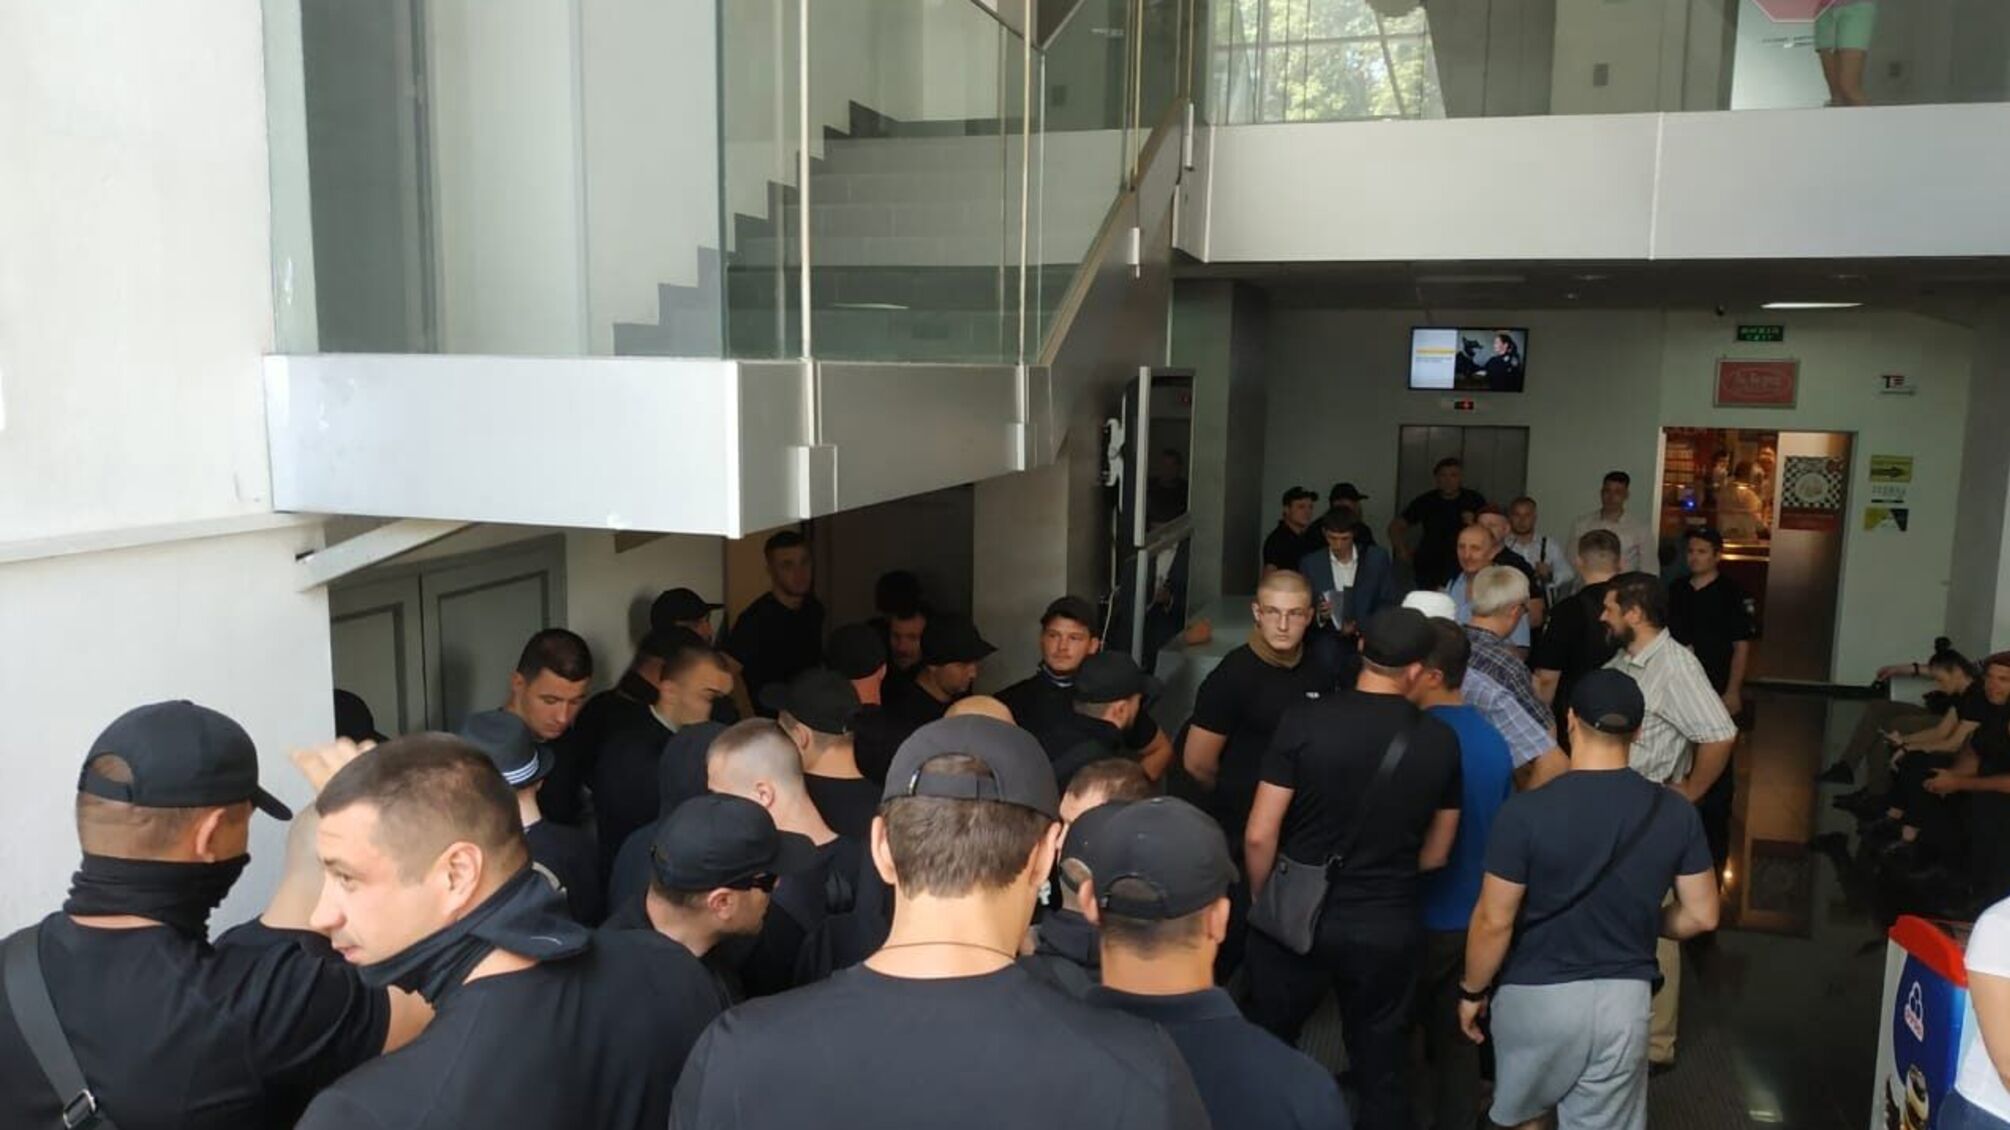 Люди олігарха Фукса захопили бізнес-центр у Києві: друга спроба рейдерства